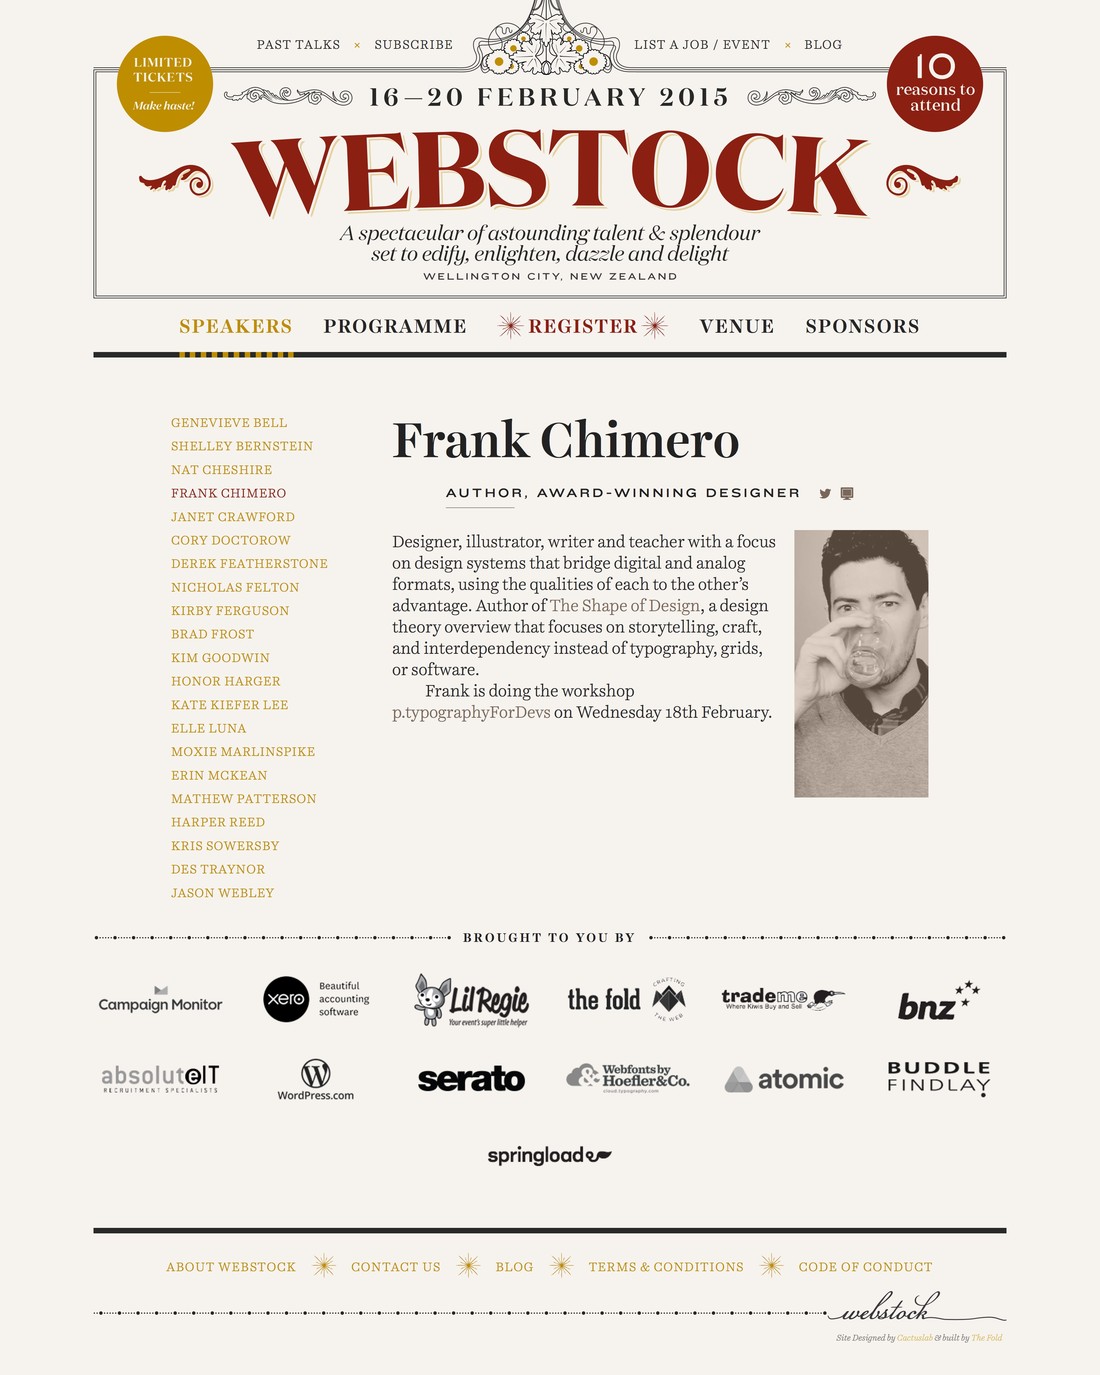 Detail image for Webstock